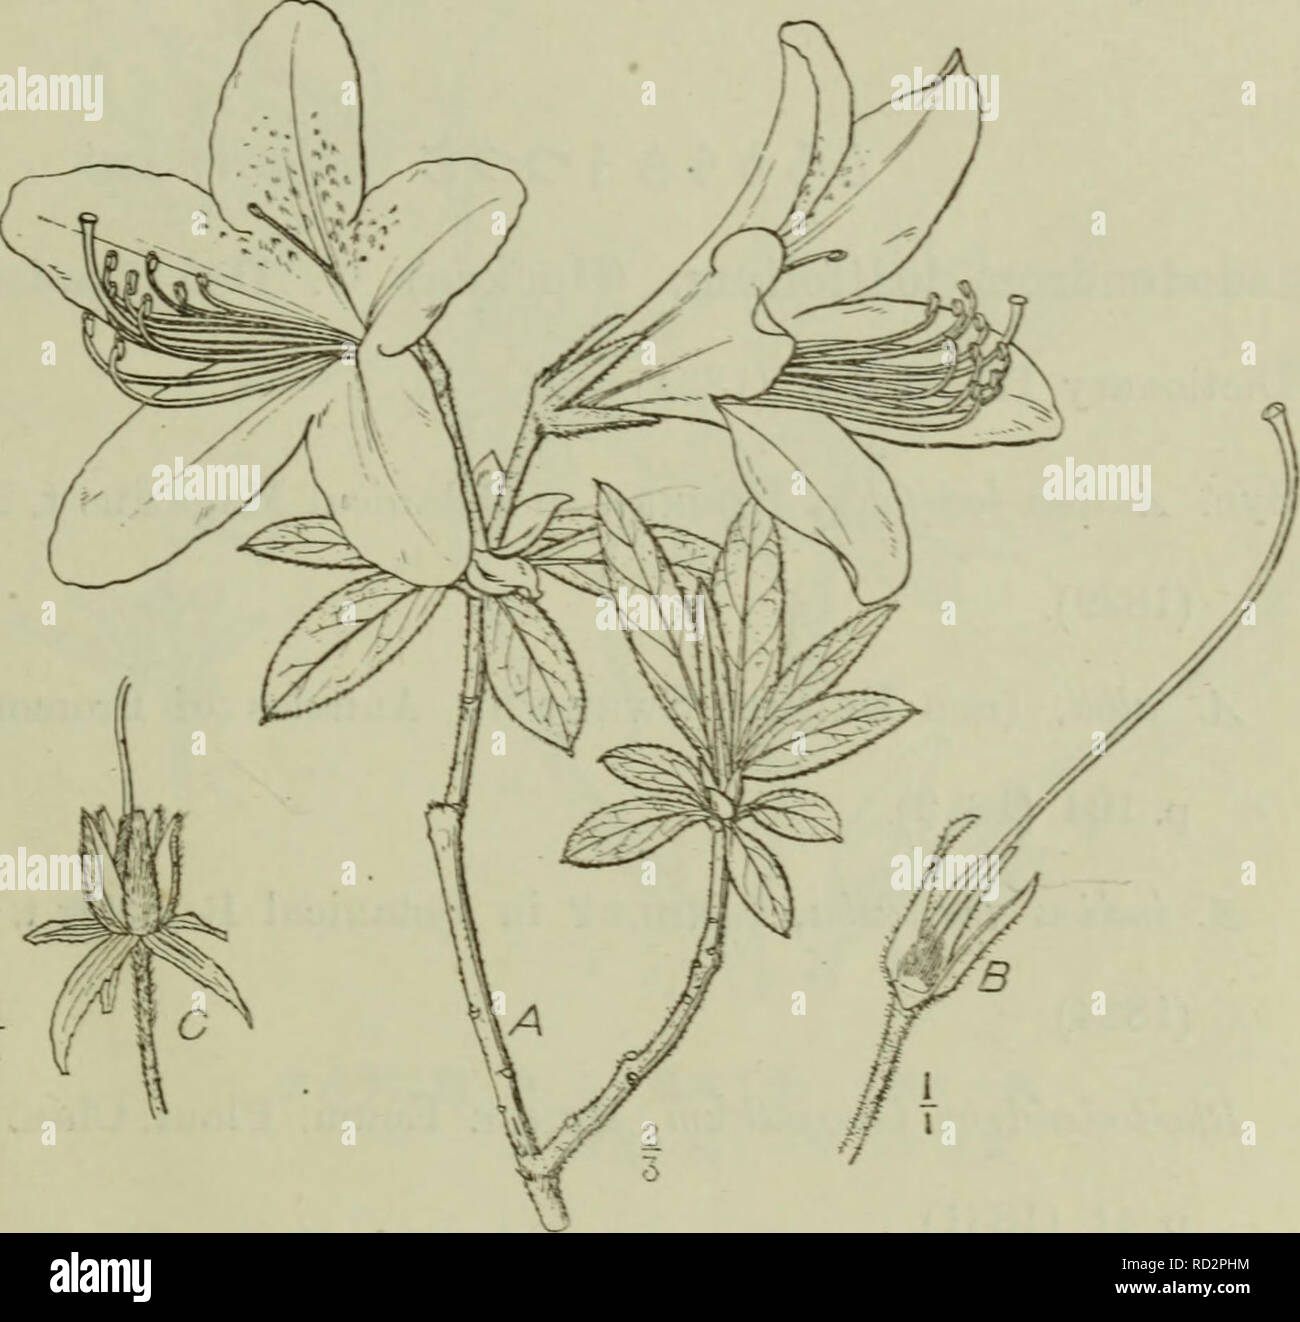 . Dai Nihon jumokushi. Trees; Shrubs. m m (109) Syu. Azo.Iea rosriiarhv'foUa, Bur:jaxn Flor;i Indica p. 43. t. 3. f. 3.(1768). Rhododendron macrosejm!urn, MATsriiUEA Index Plantarnm Japonic-arumã§I. '2. p. 4oo. p. p. (L912). é«ãµåä¹è³äºå°ºãçæ¨ãæãç«ããæãåæ¯å¯çã·å¾ã è ºæ¯ã² äº¤ãï¼æ¥èãæ«éå½¢åãåæ«éå½¢ï¼é·ãµåä¹è³äºçï¼è¡¨è£ãèç·£. ç¬¬å -åã¼åãè±ãèããéã¯'ã¬é° I B.é;ï¼ãè¦ããä¸é¨C.æèµ ç-ã¥æ¯ã¡ãªãç§èãåæ«éå½¢ãã³ã¯åã·ãè±ãæãå ç«¯ãæ··è½ã ä¸-å¤®-ä¸ä¹è³ä¸åå®çã¸.è±ç¡¬ãé·ãµä¸çé¤ãæ¯ãè ºæ¯ãã¢ã¸ï¼. Please note that these images are extracted from scanned page images that may have been digitally enhanced for readability Stock Photo